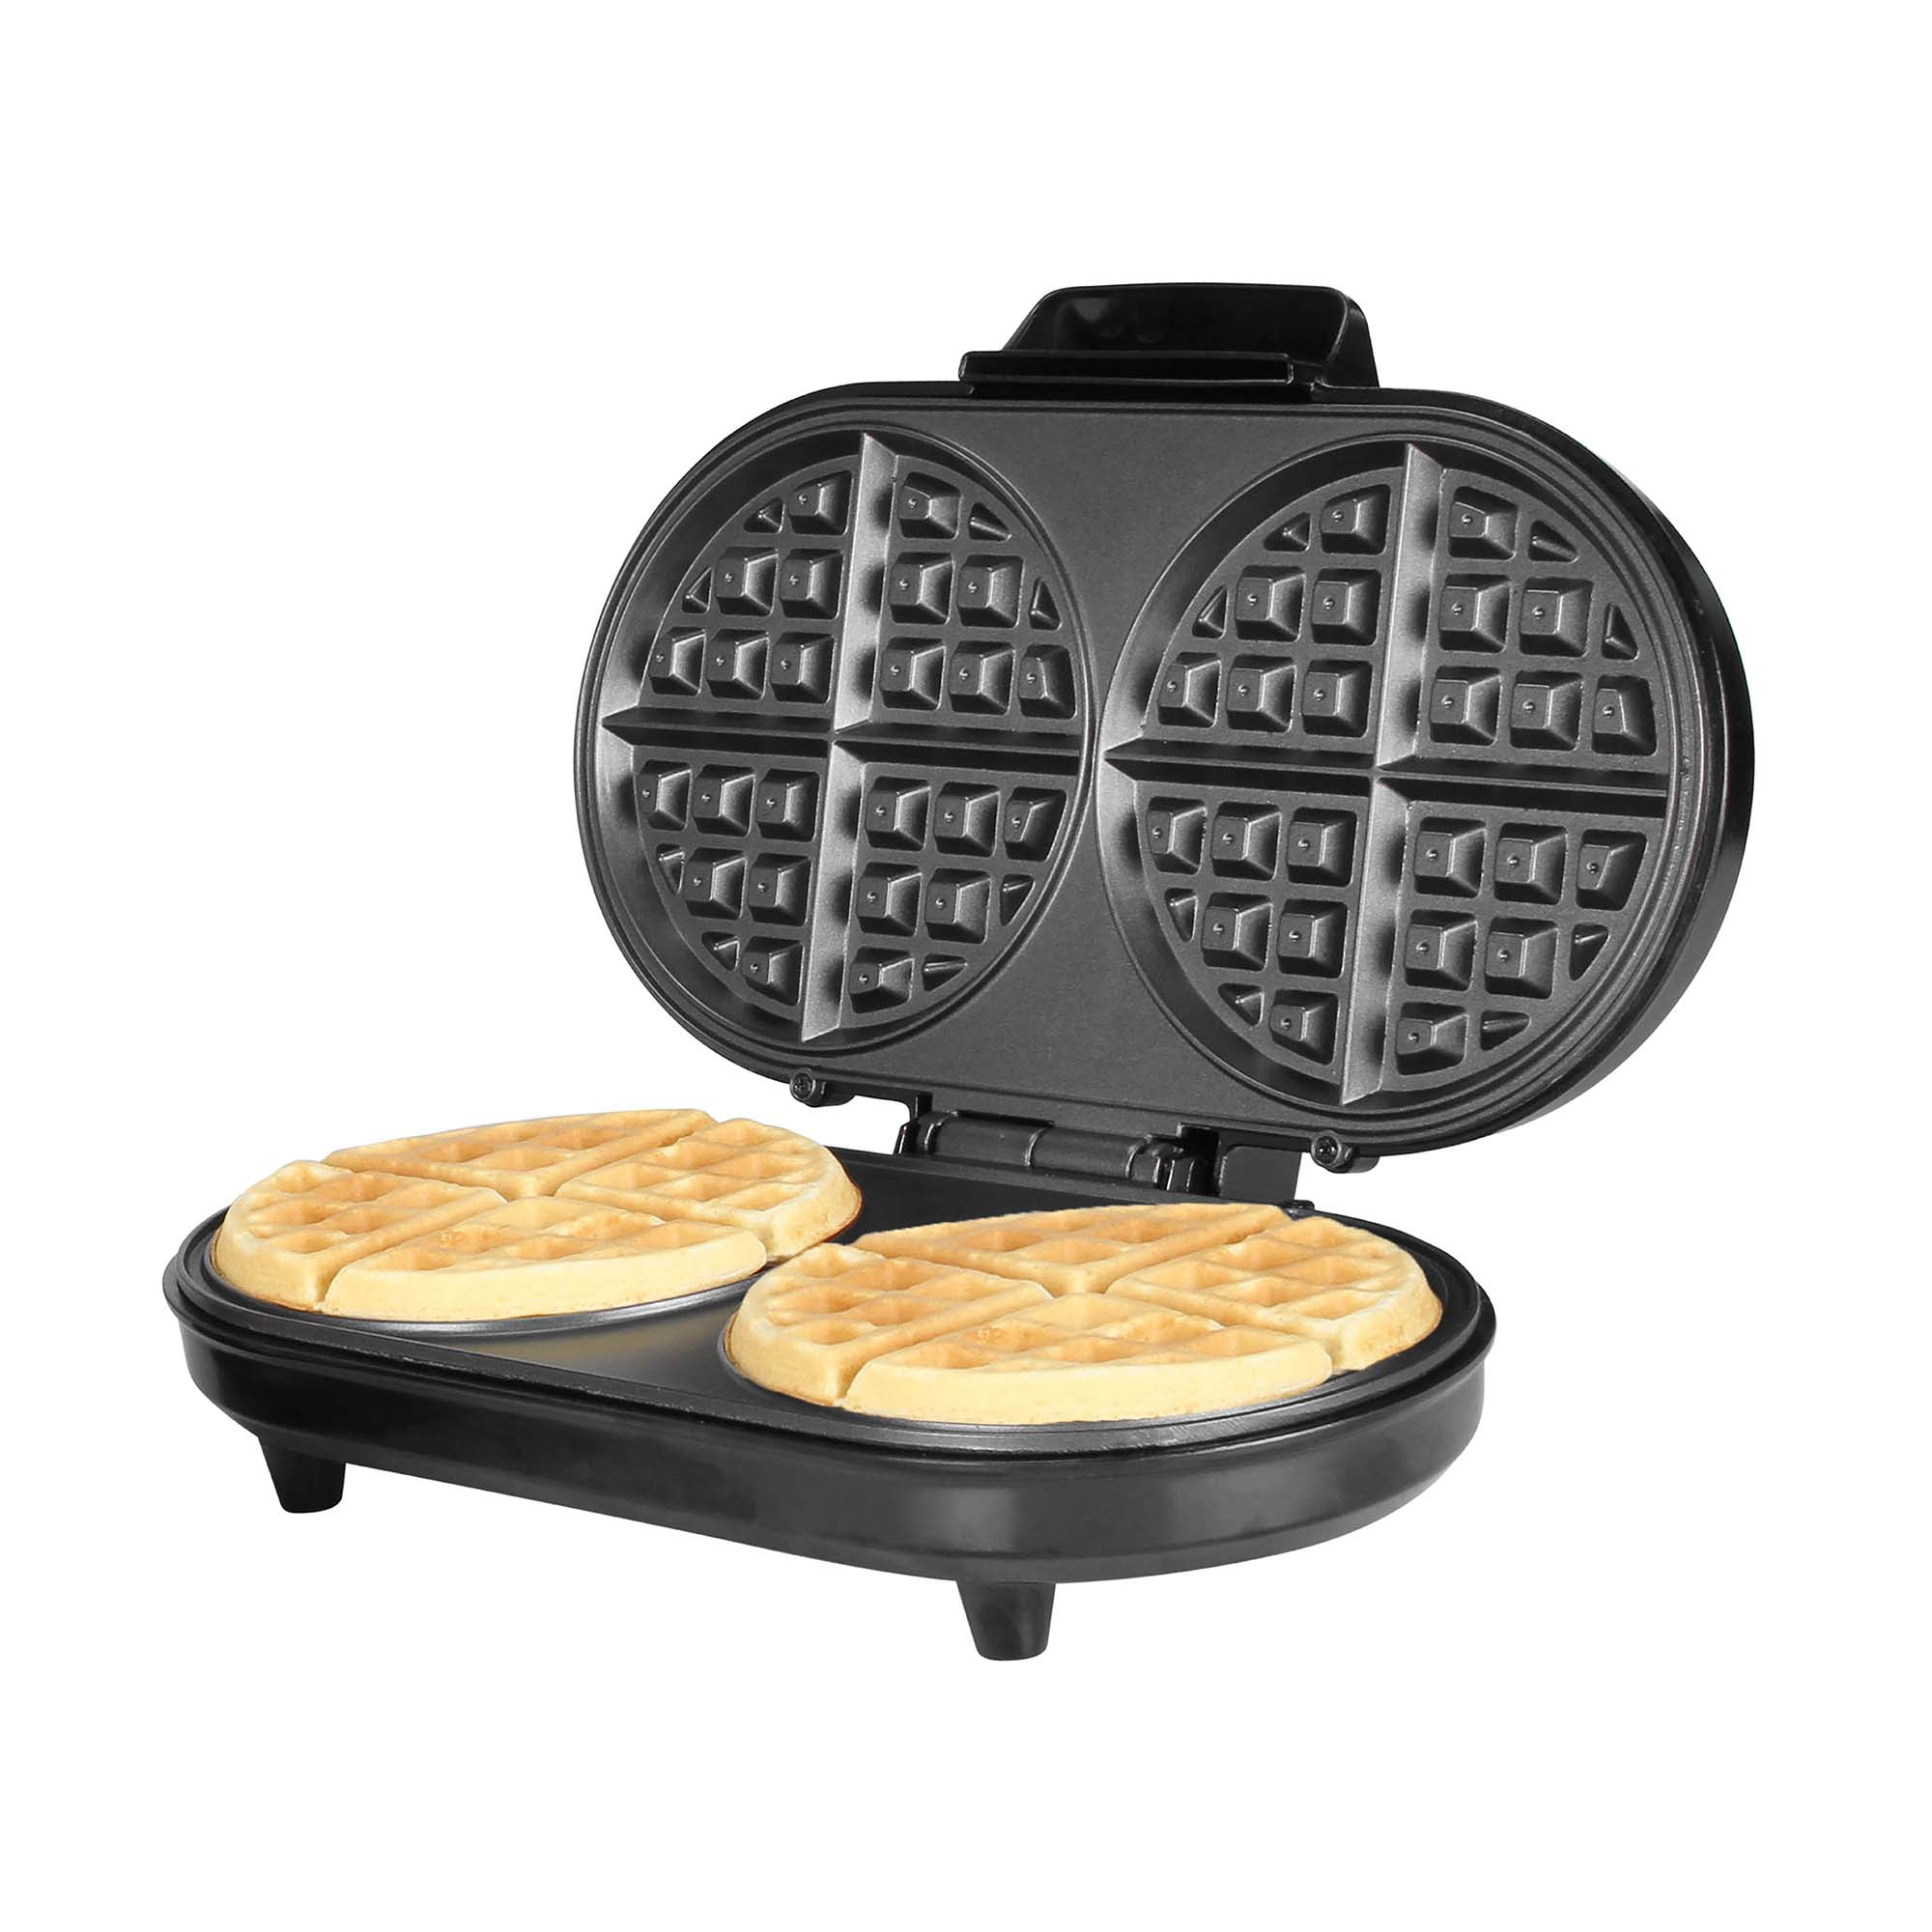 Kalorik Multi-Purpose Waffle, Grill & Sandwich Maker, Stainless Steel -  20243148